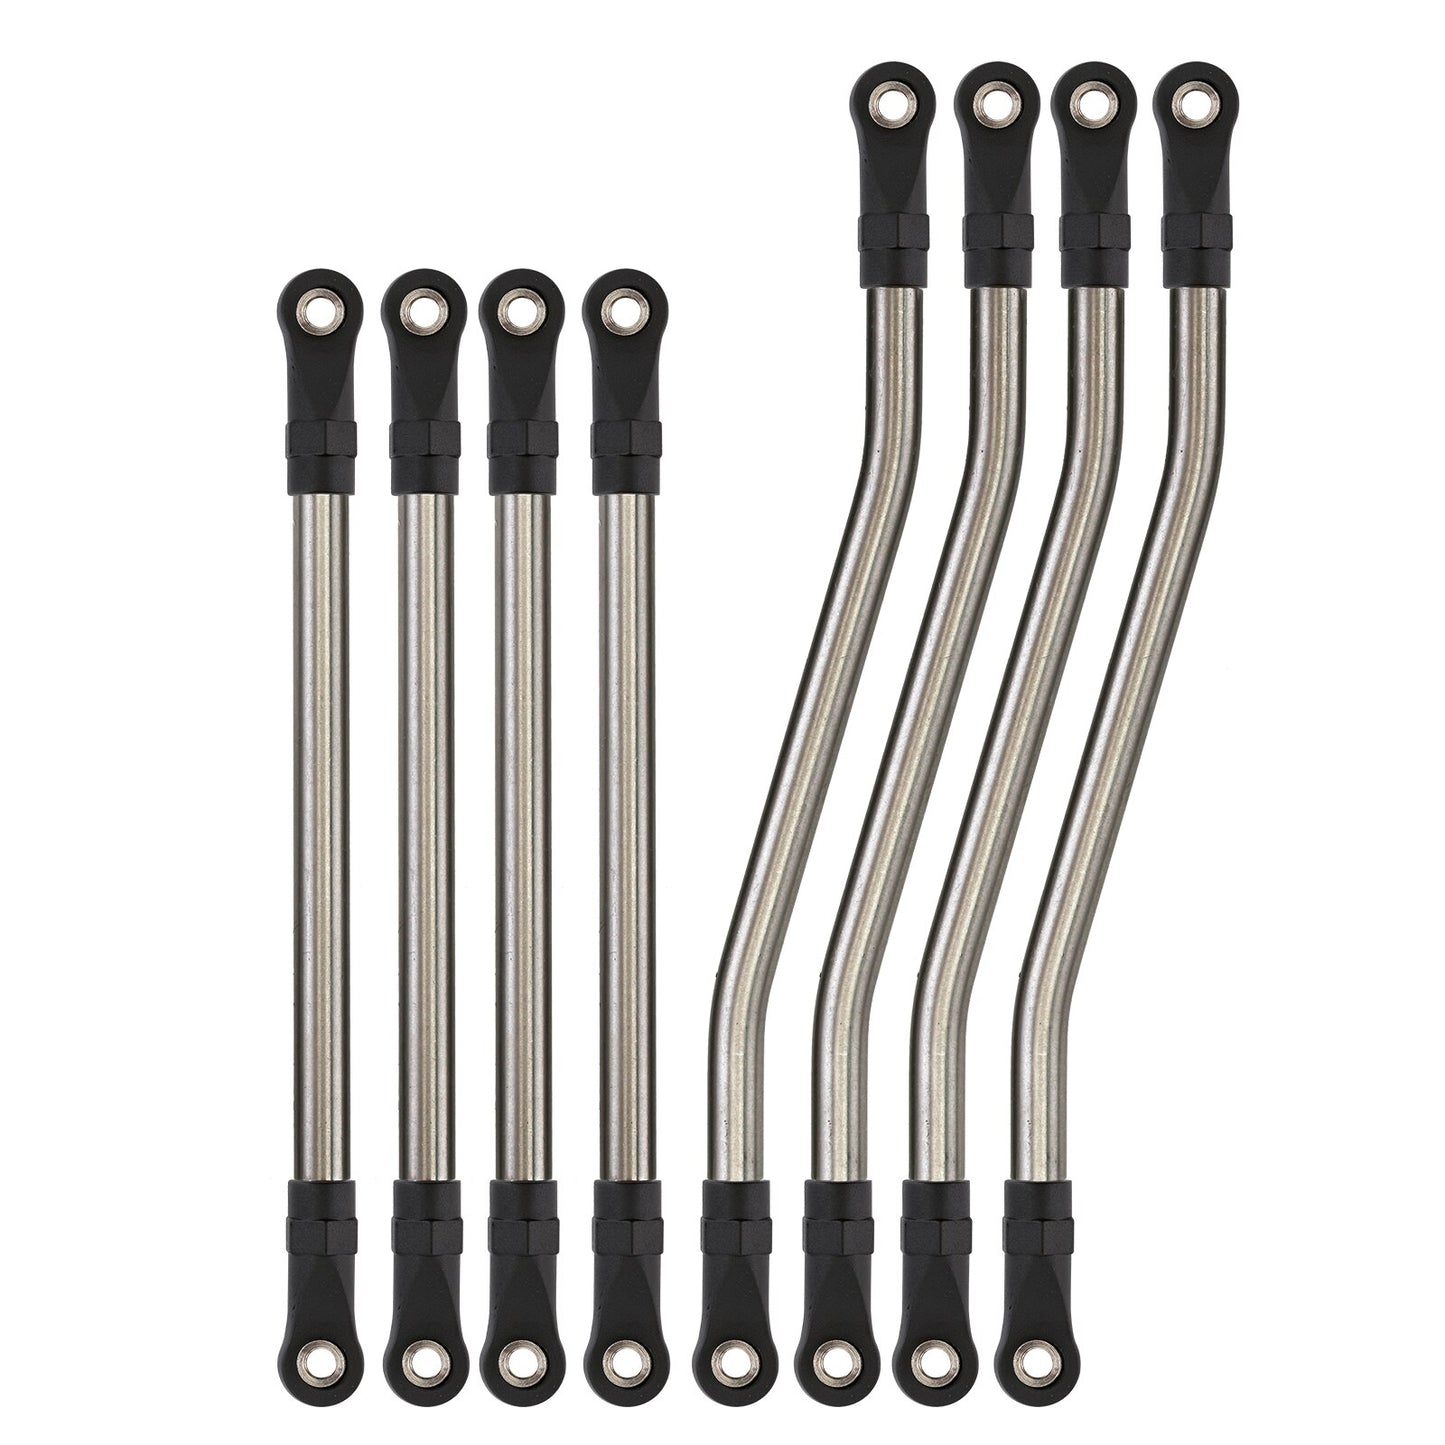 INJORA 8pcs/set Metal Steel Link Plastic Rod End